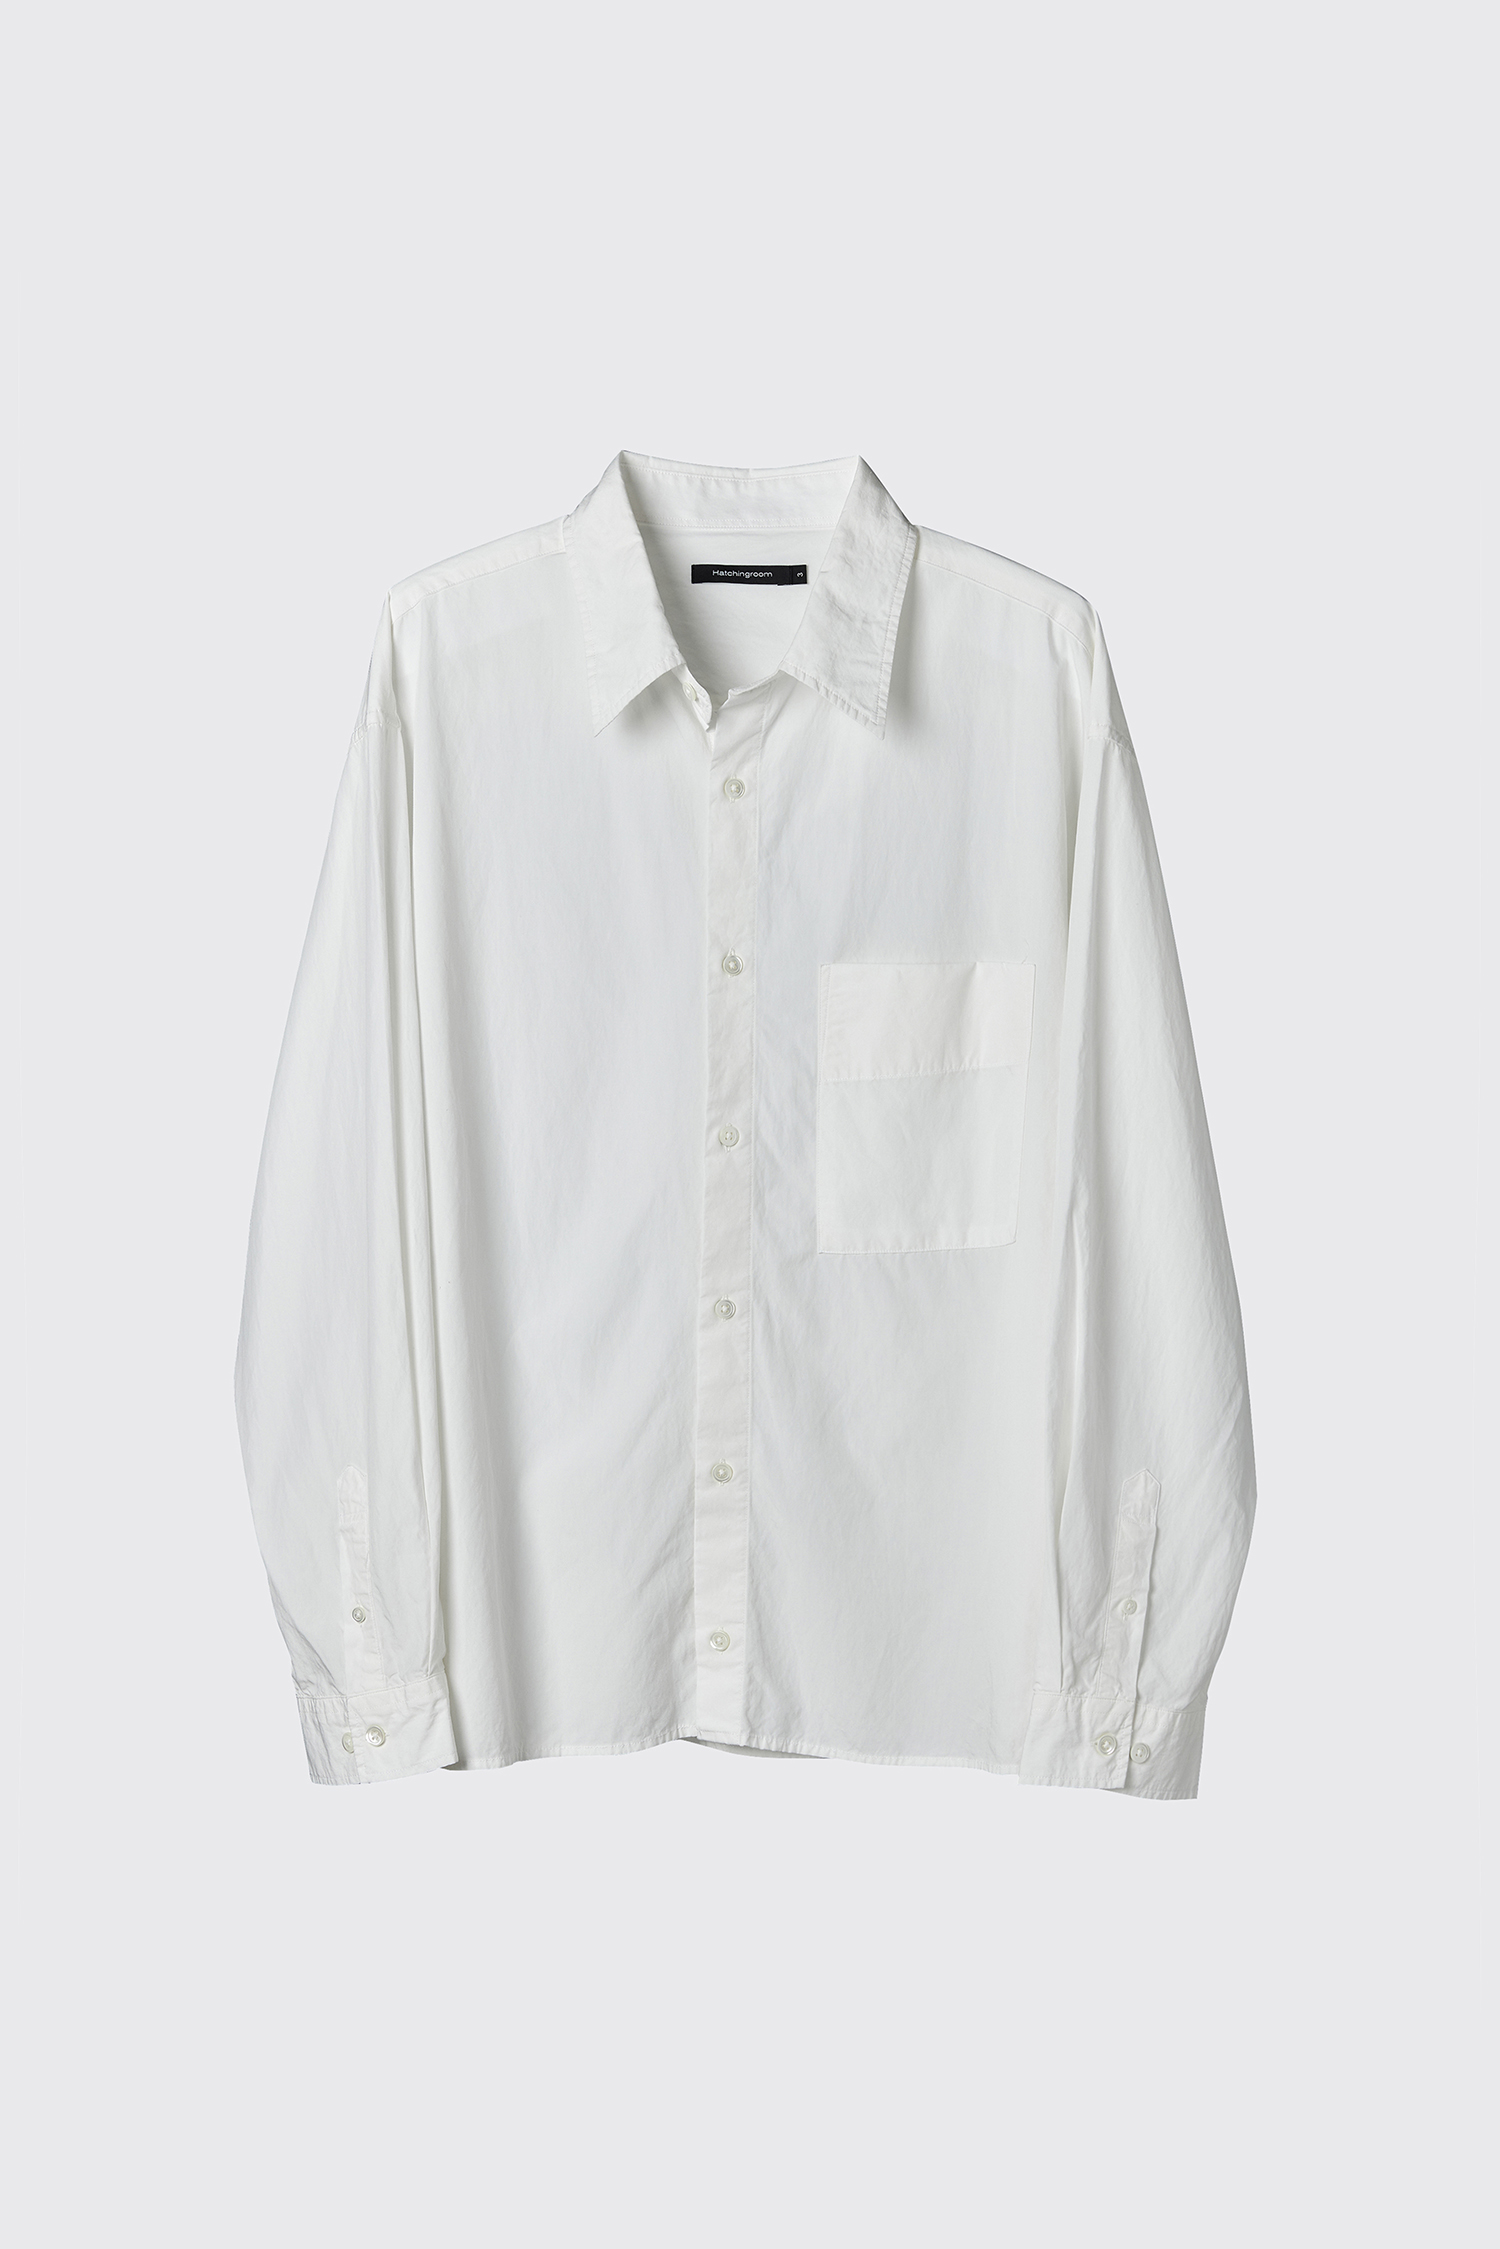 Crop Shirt White (Restock)